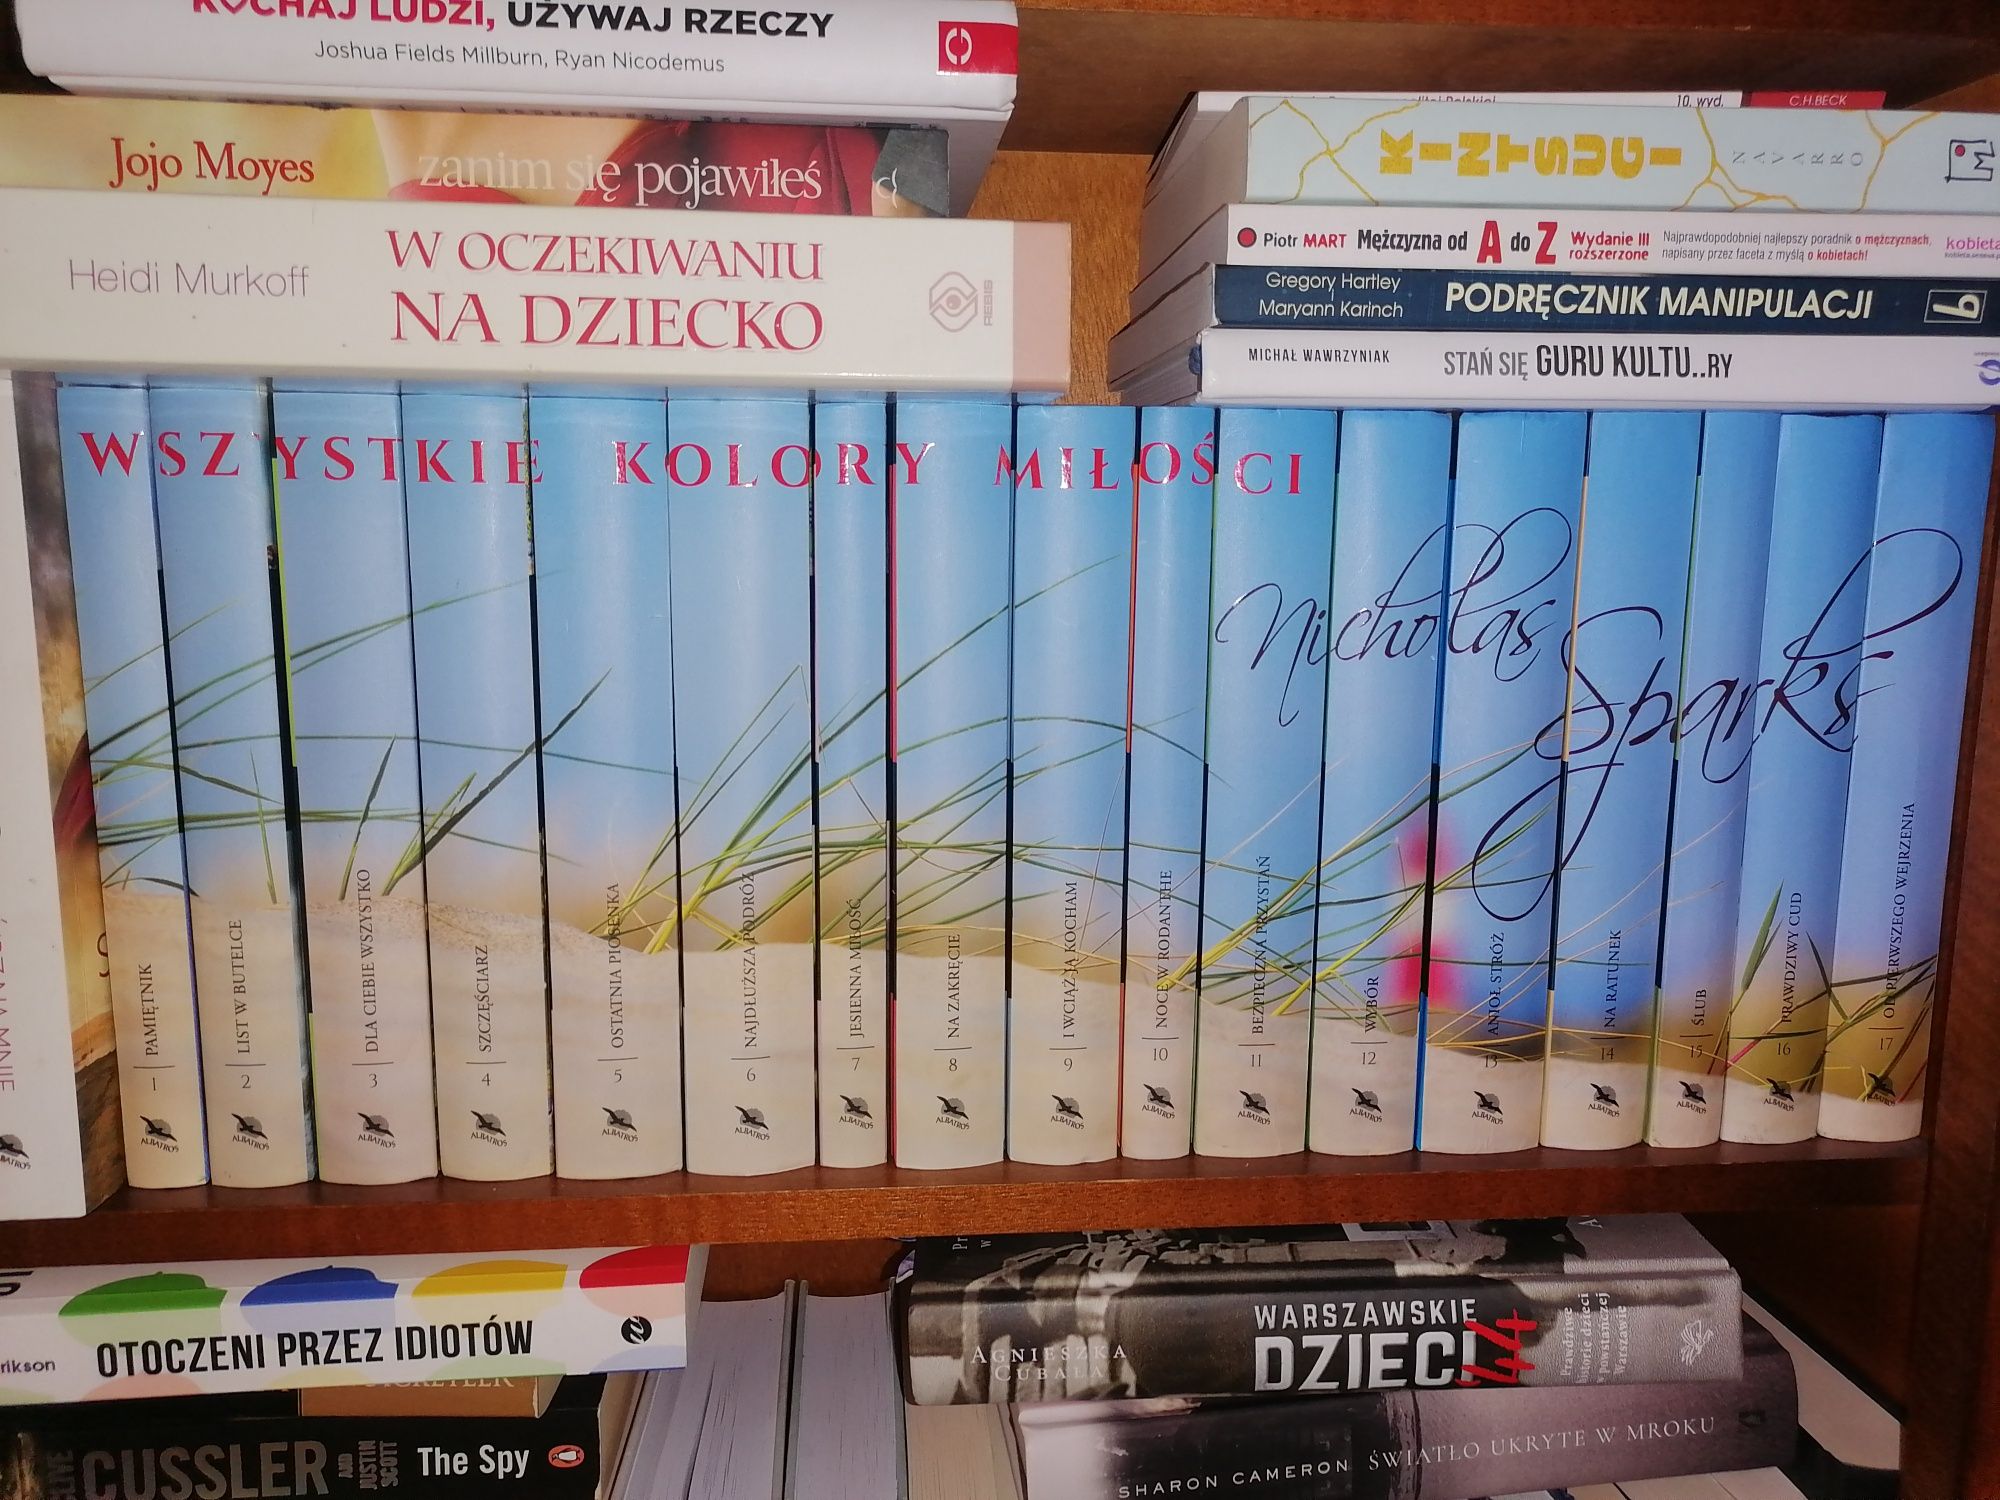 Nicholas Sparks kolekcja wszystkie kolory miłość 17 książek